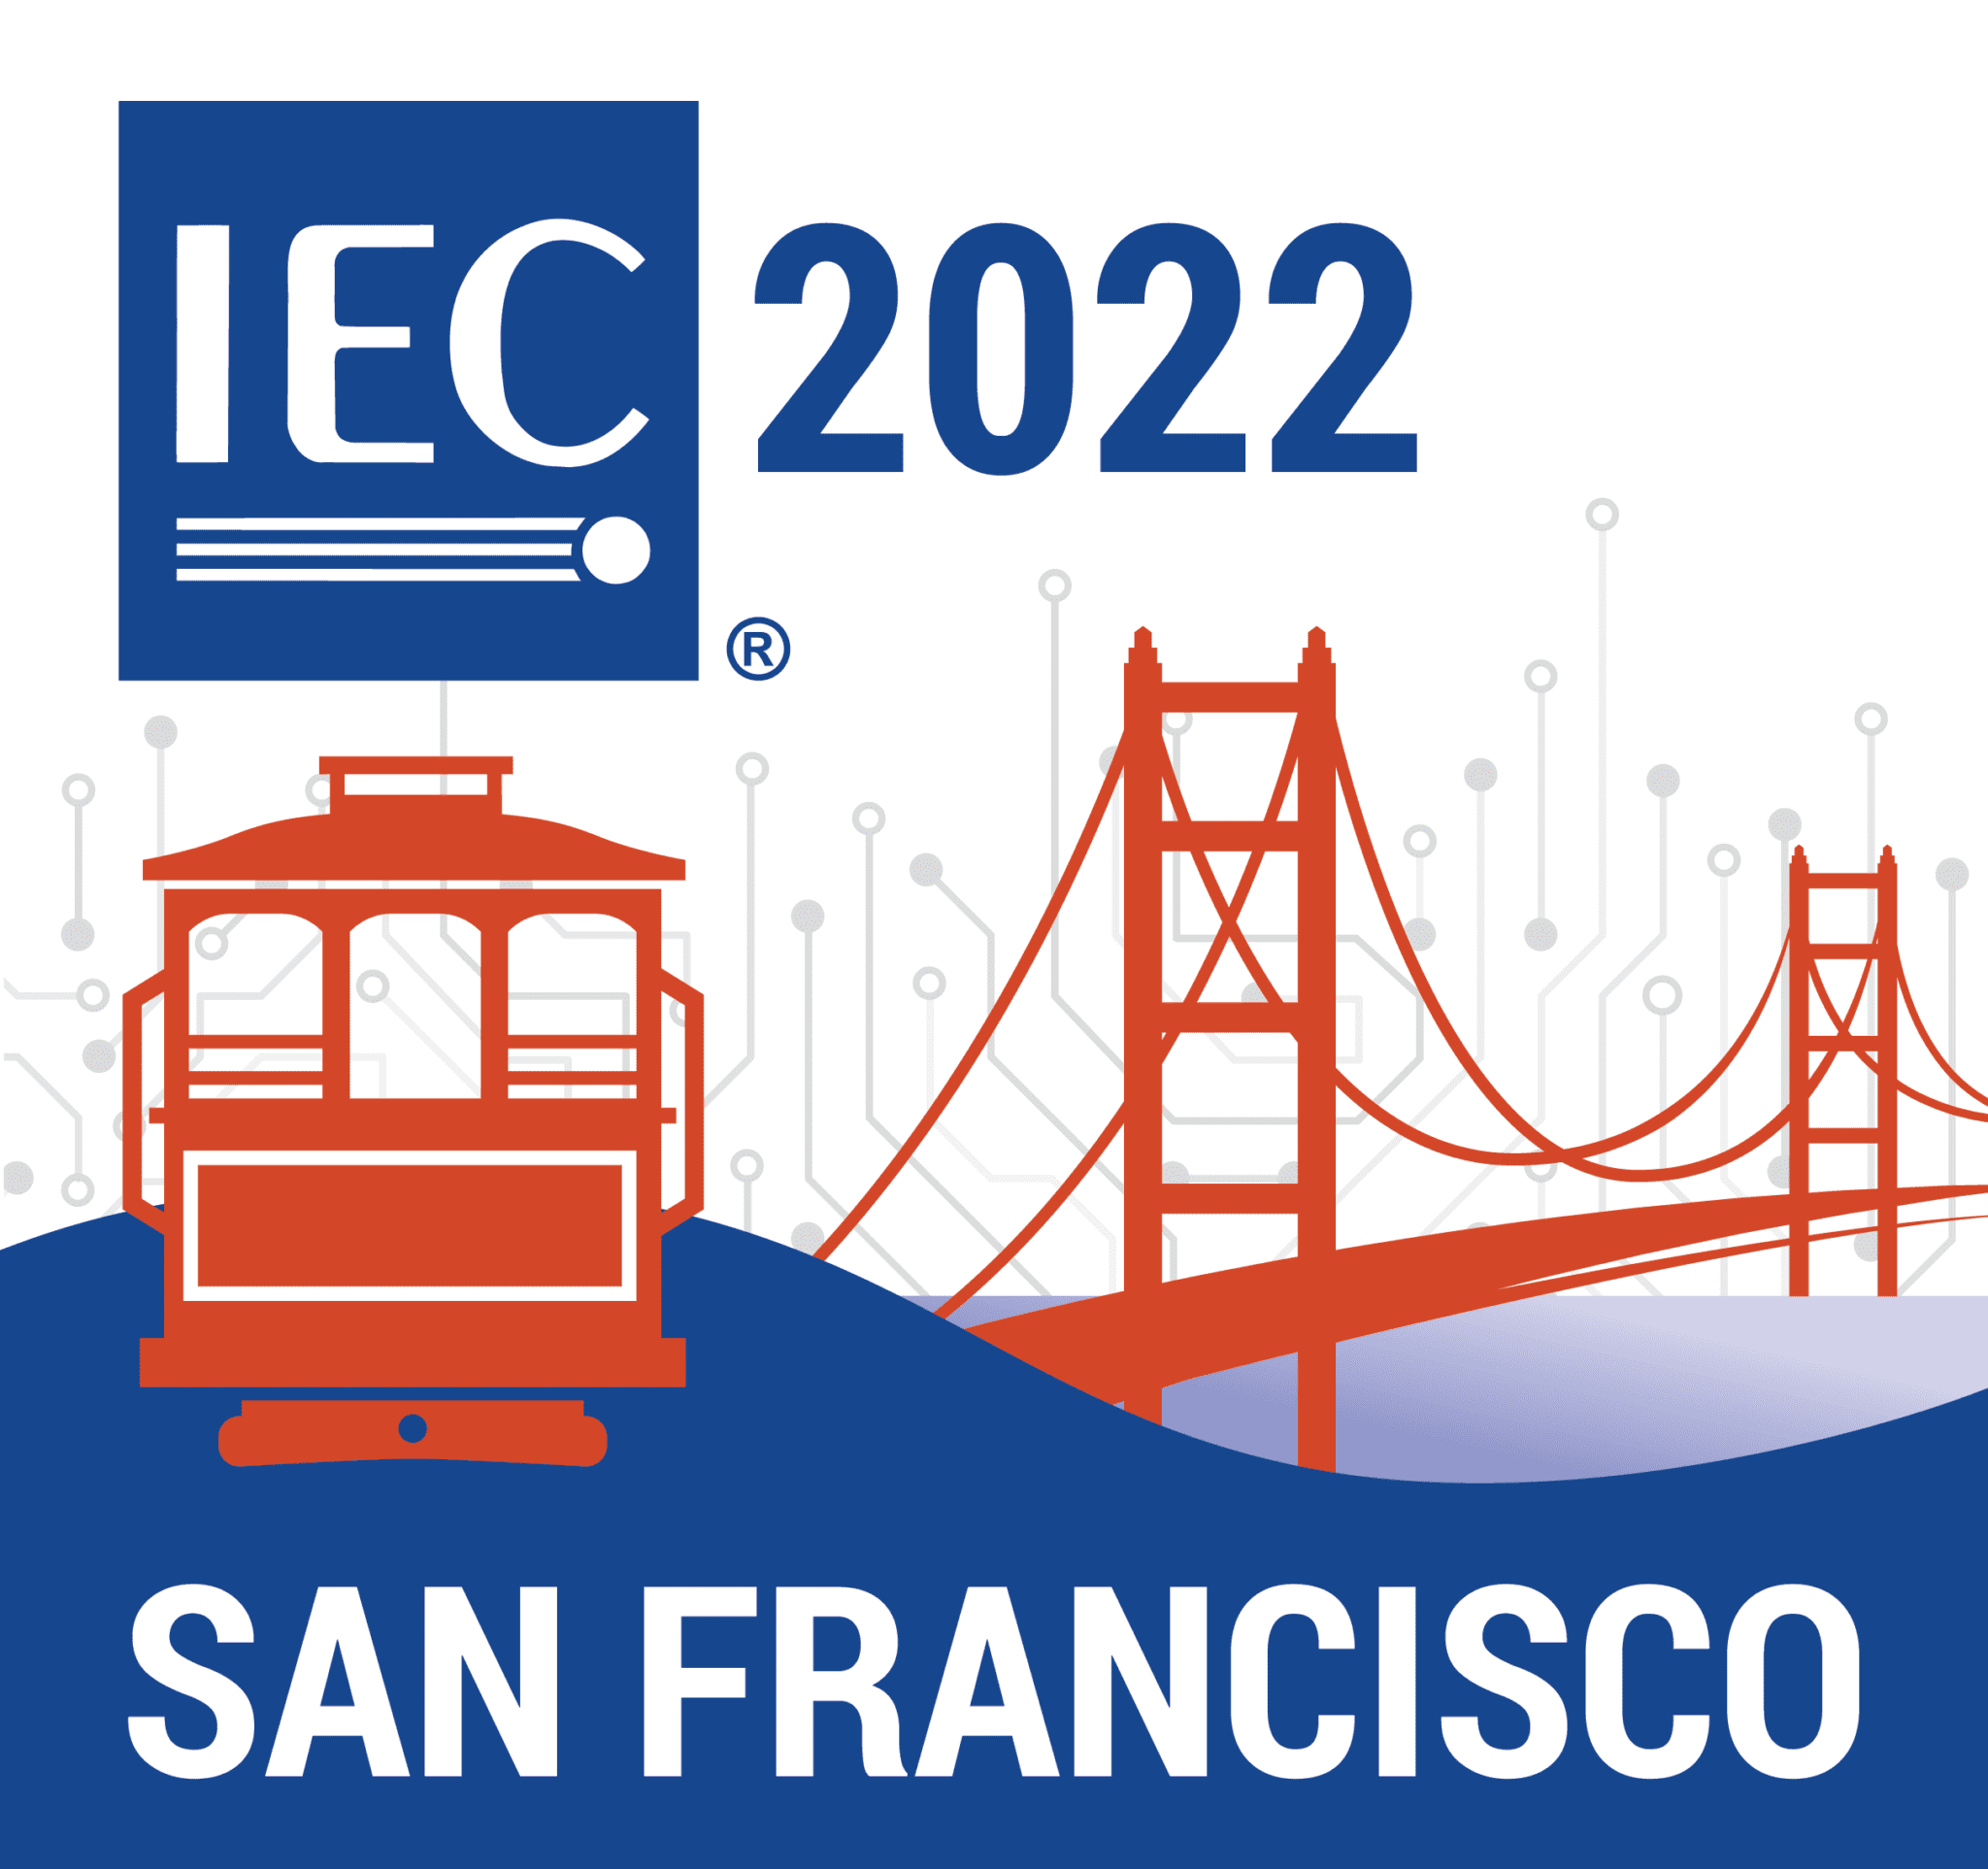 IEC:n 86:s yleiskokous järjestettiin San Franciscossa